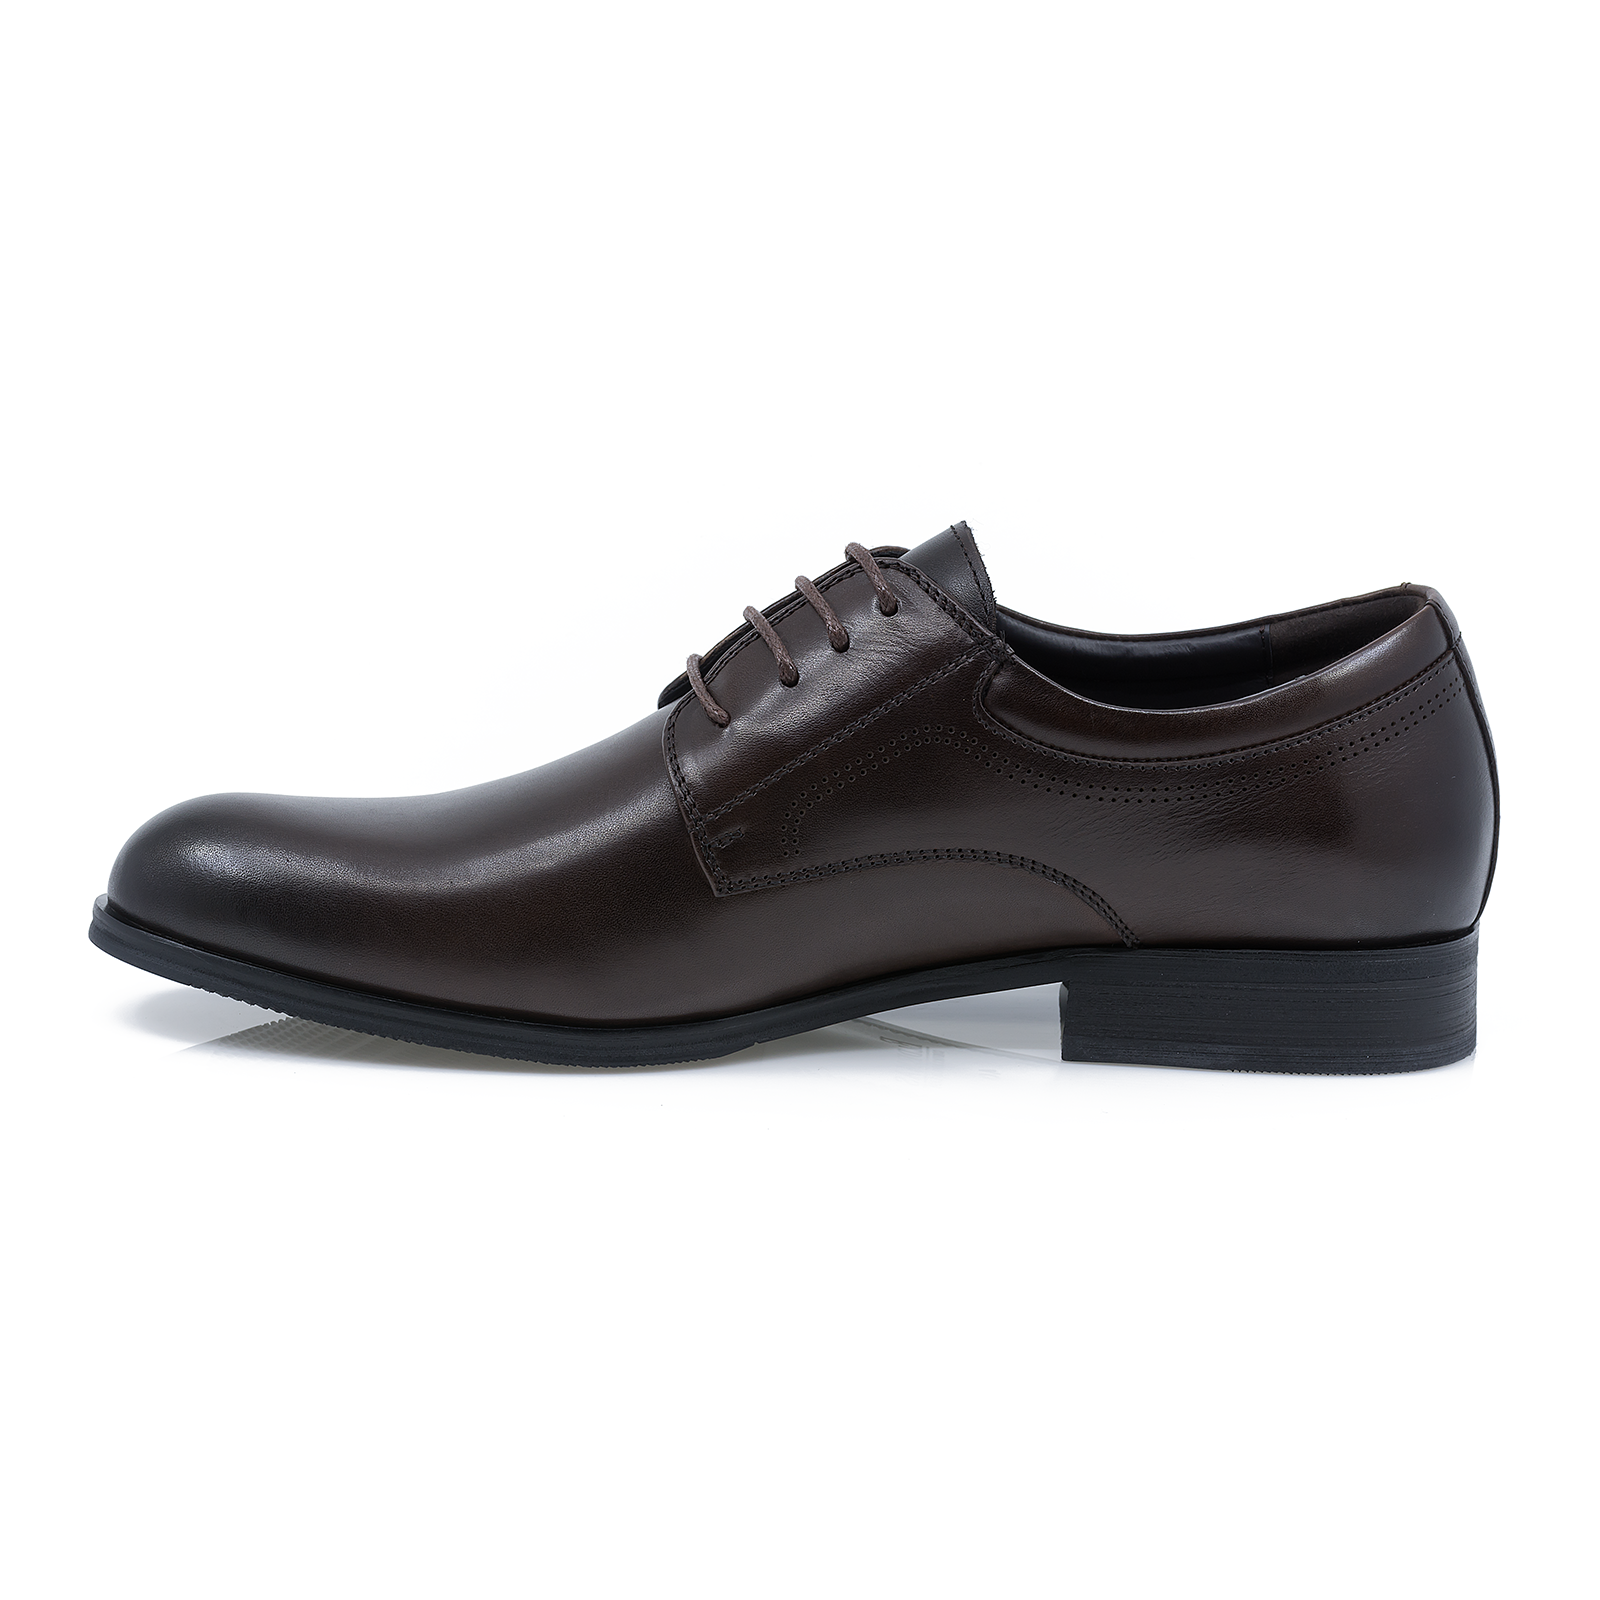 Pantofi-barbati-ELDEMAS-F4155-362-eleganti-piele-naturala-maro-nouamoda.ro-2